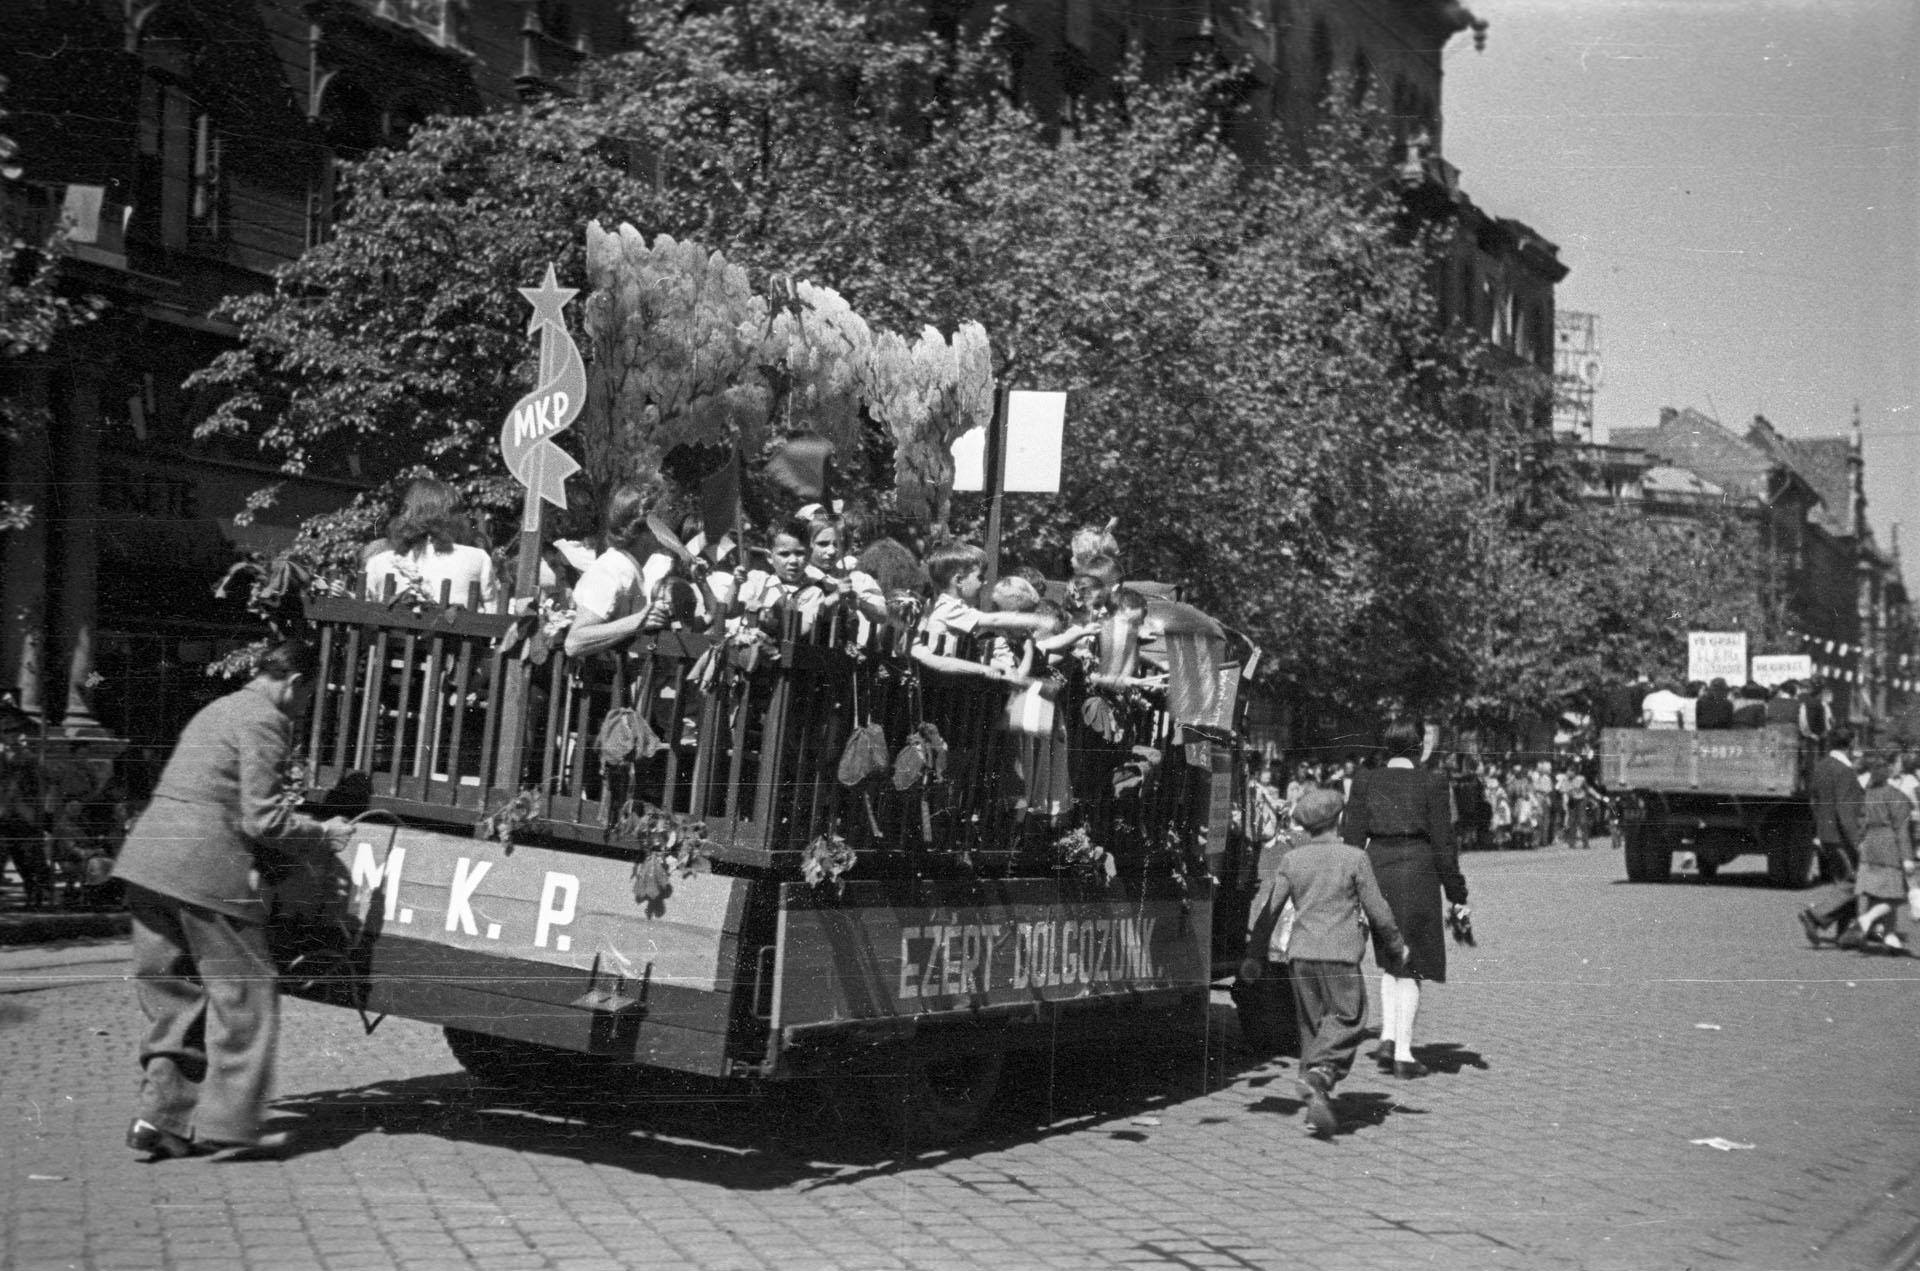 Gyerekek egy teherautón. Andrássy út a Jókai tértől az Oktogon felé nézve, május 1-i ünnepség felvonulói (Fotó: Fortepan)